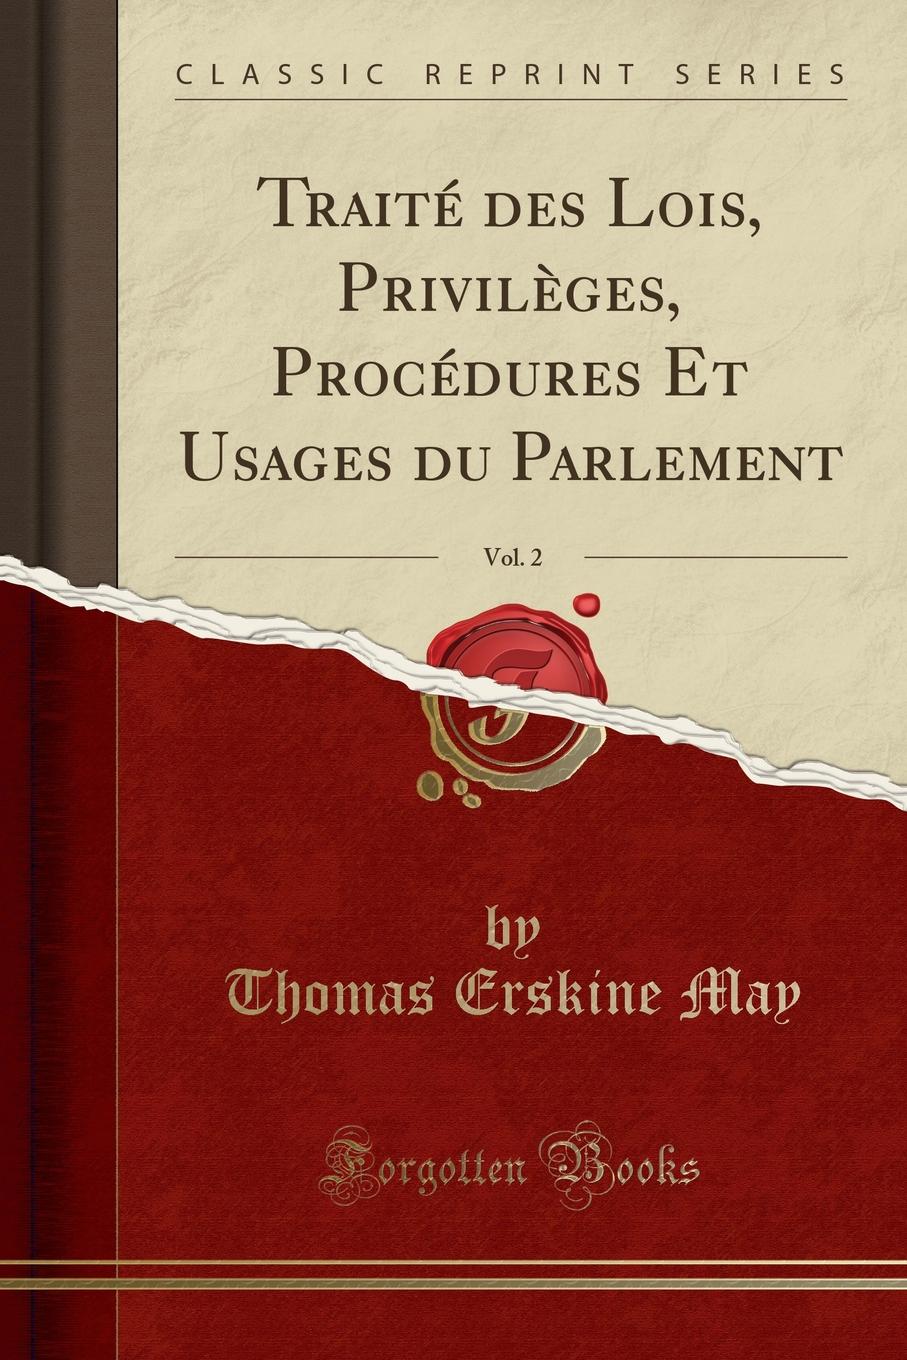 Traite des Lois, Privileges, Procedures Et Usages du Parlement, Vol. 2 (Classic Reprint)